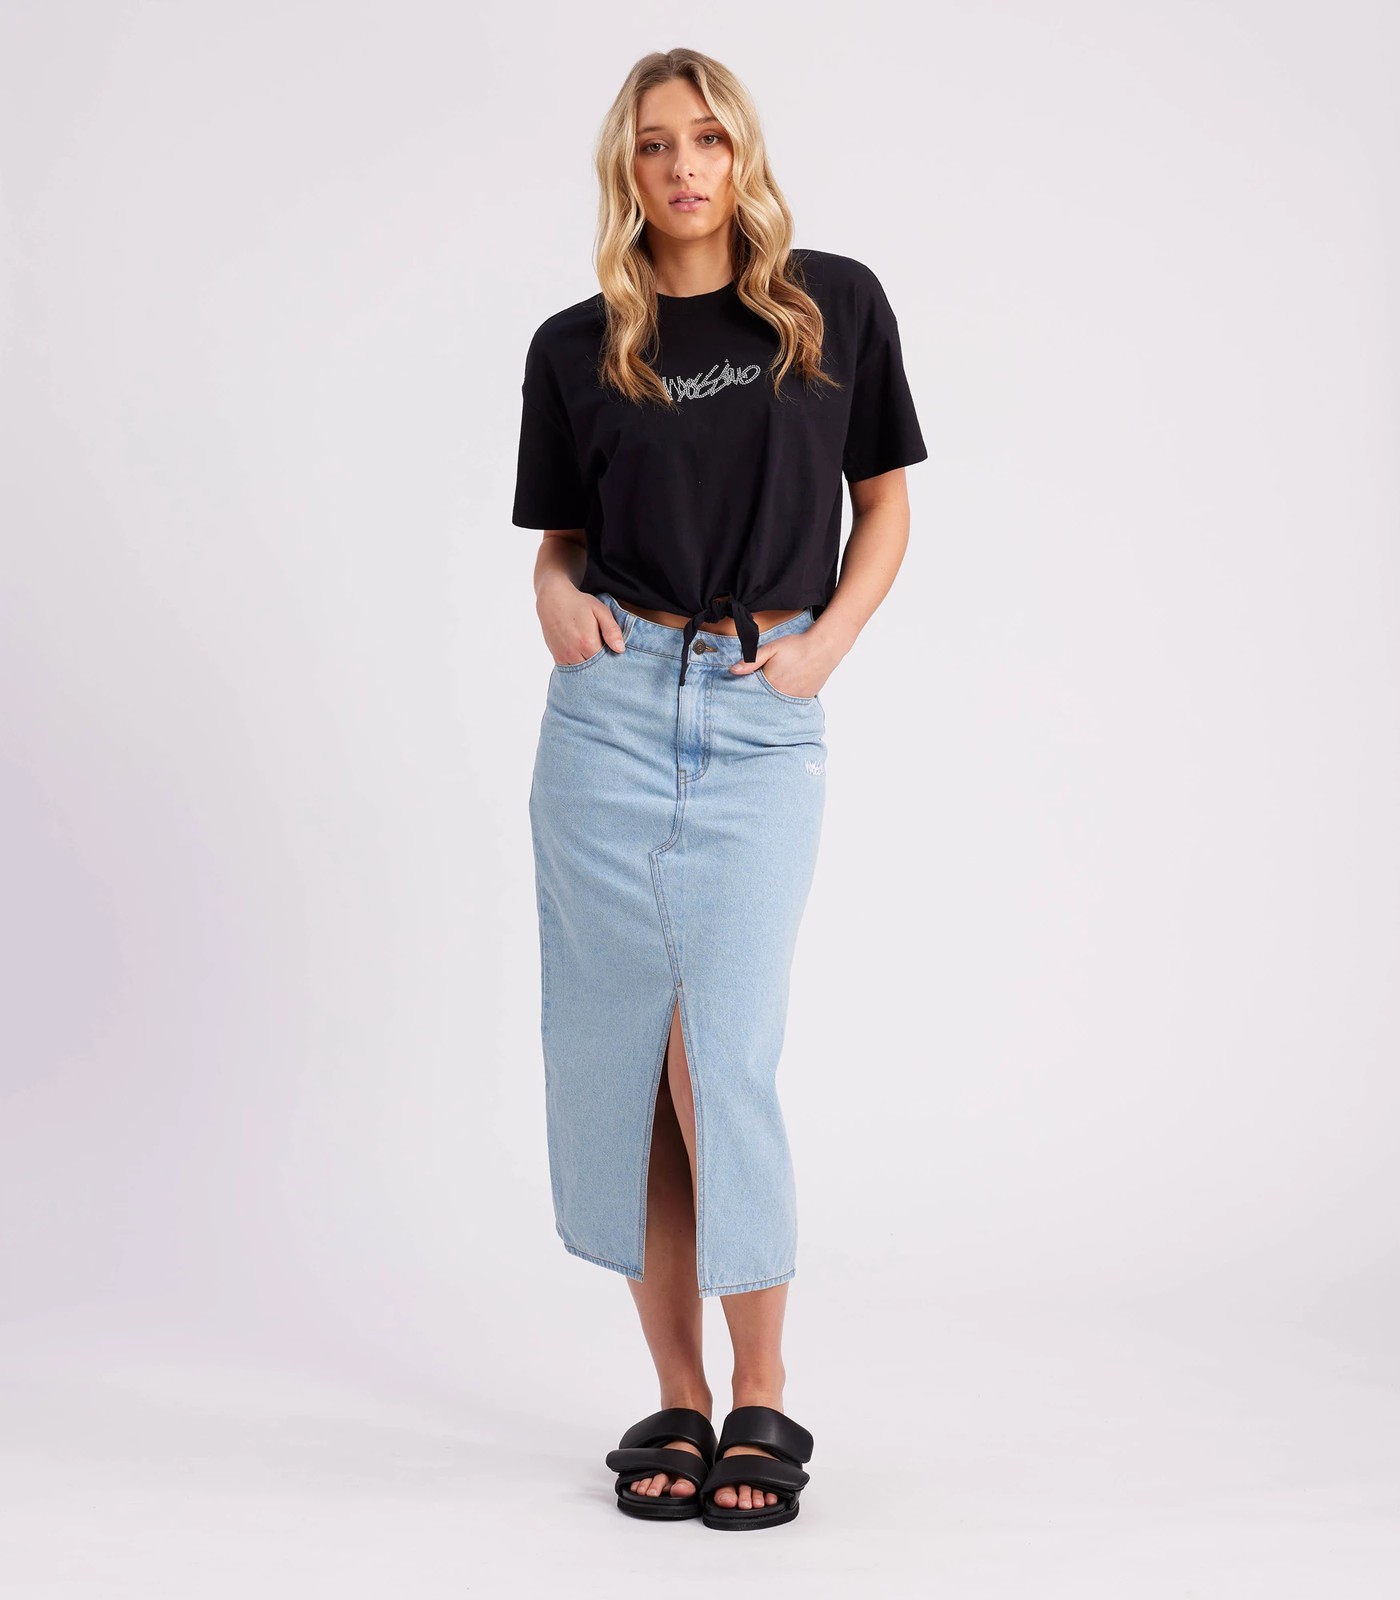 Mossimo Denim Skirt | Target Australia